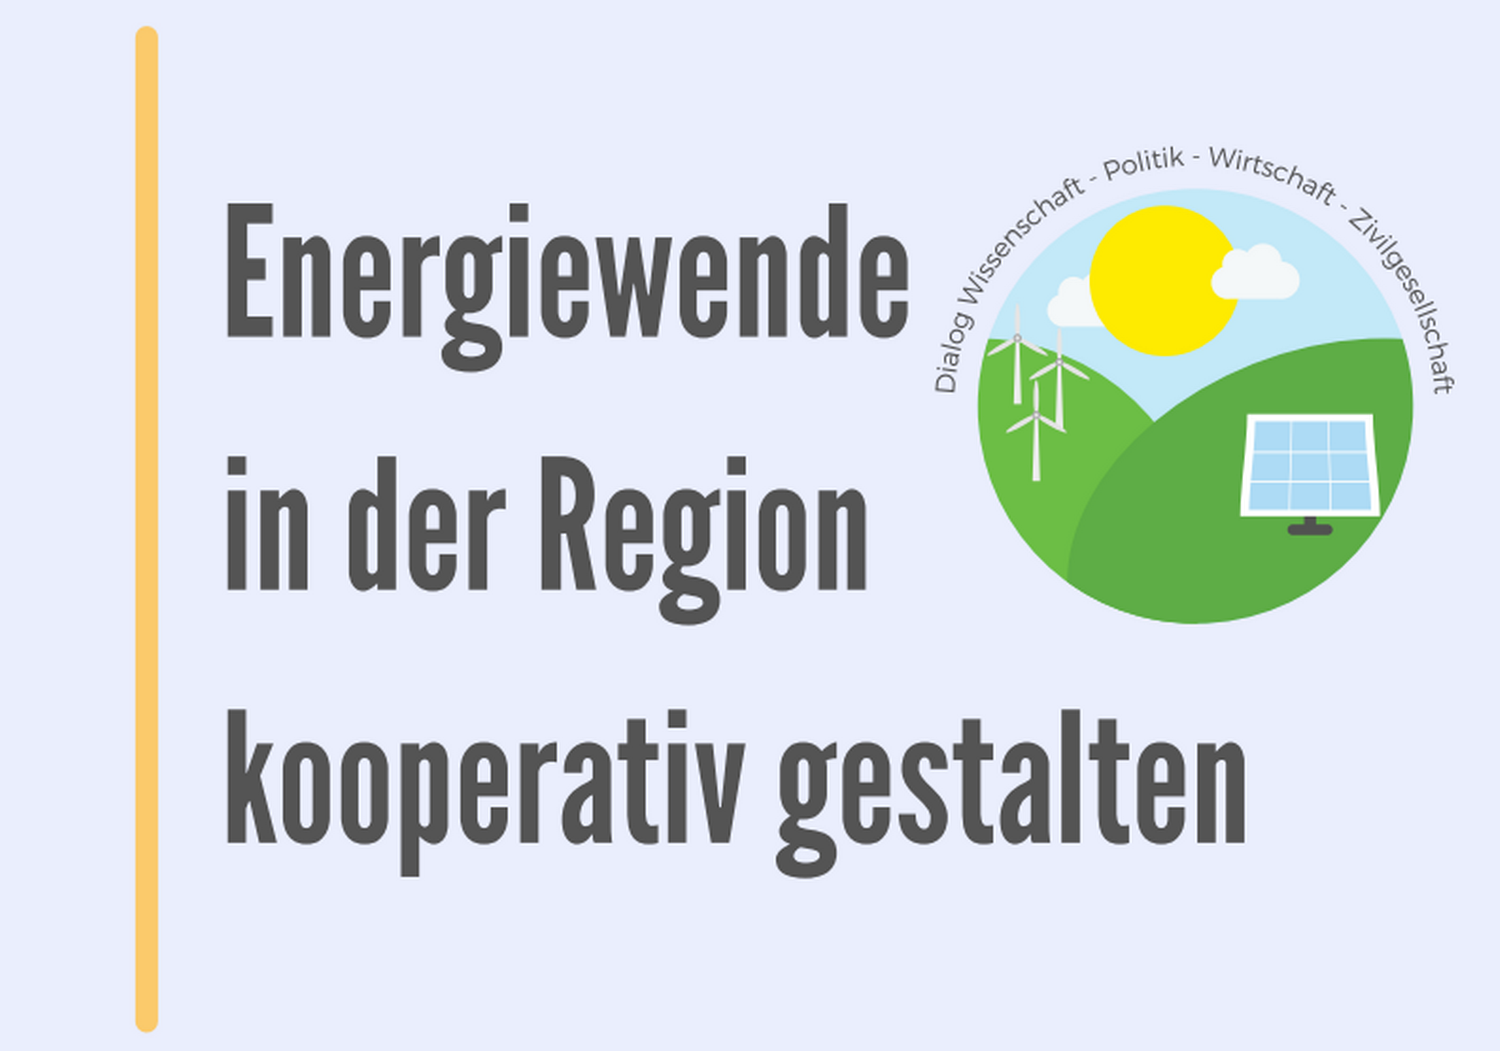 Herbstforum 2021 "Energiewende in der Region kooperativ gestalten"